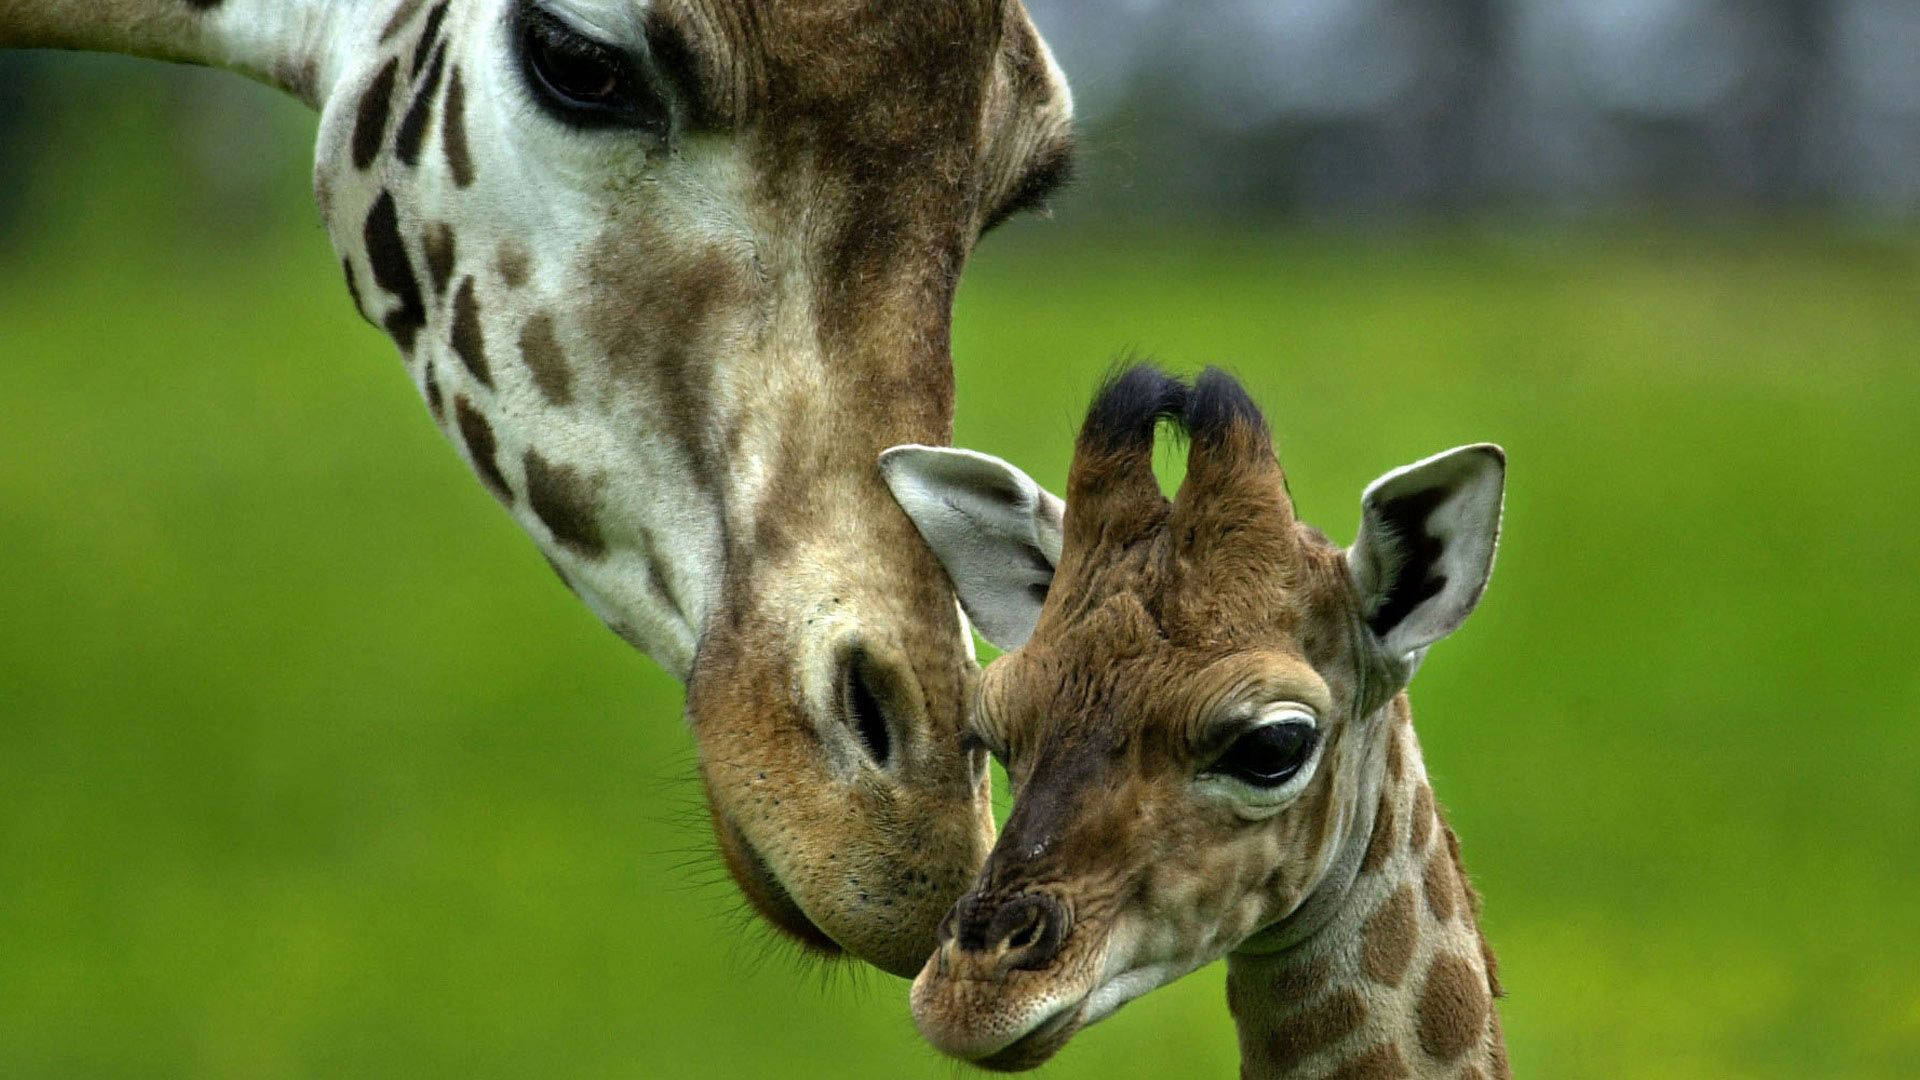 Mother Giraffe Giving Care